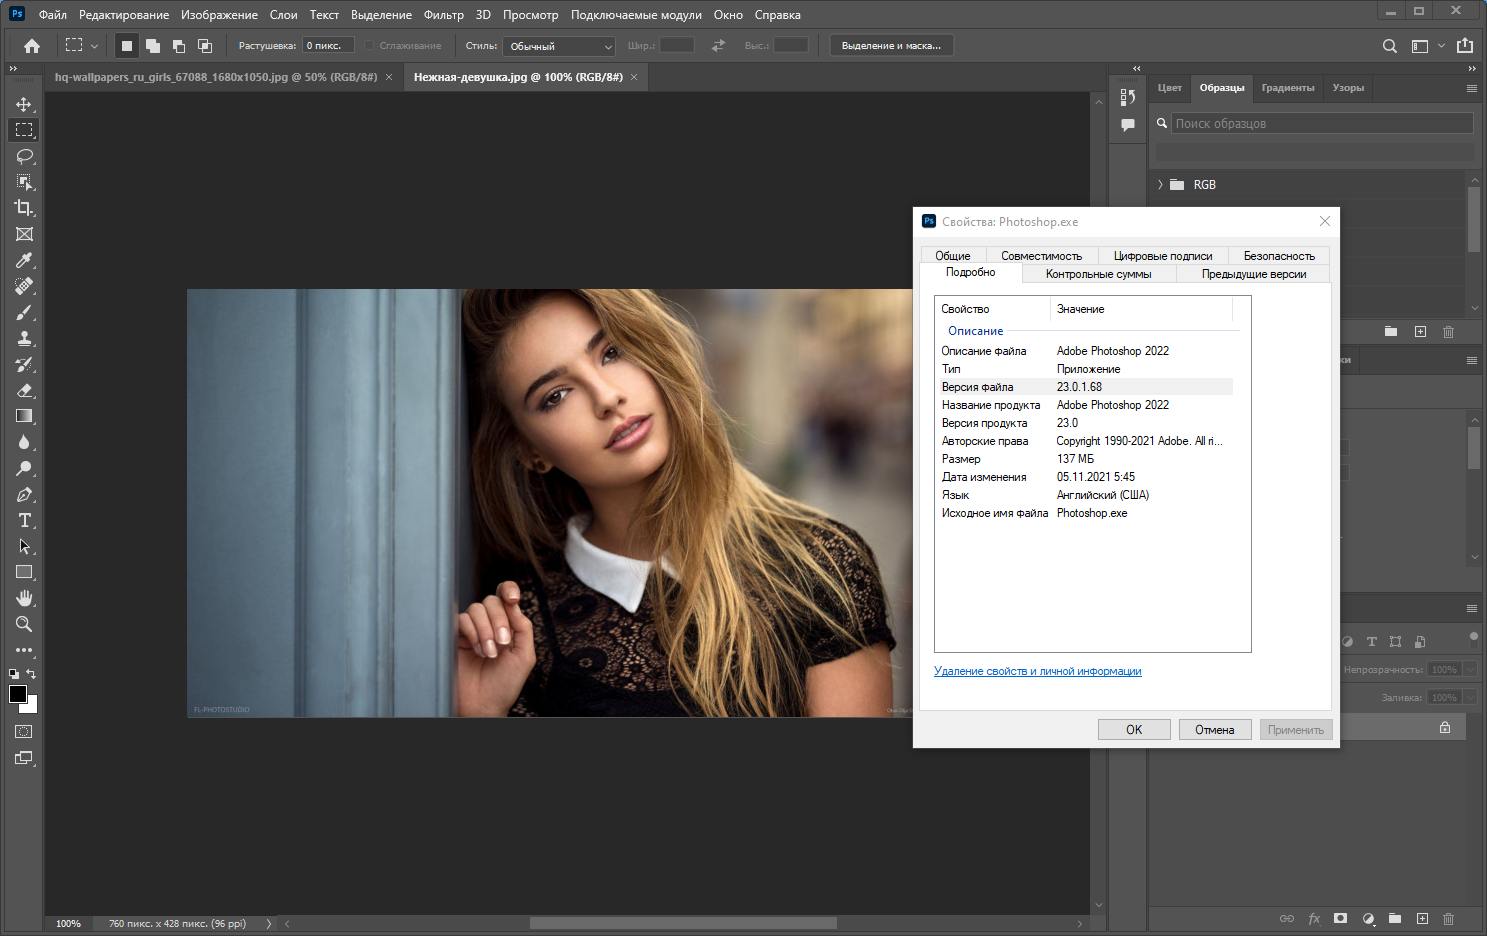 Adobe Photoshop 2022 23.0.1.68 RePack by KpoJIuK [Multi/Ru]